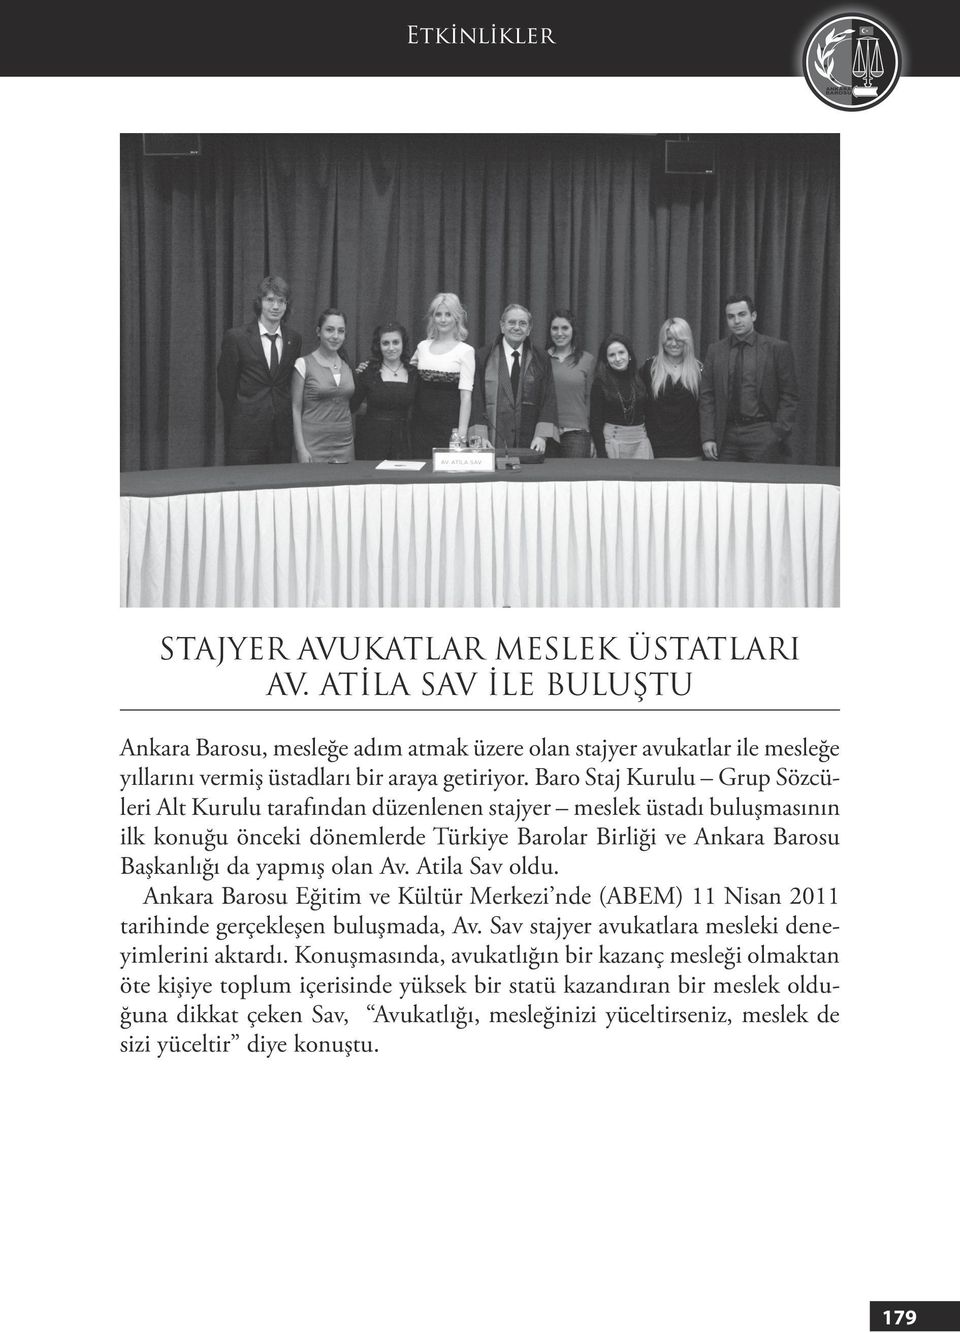 Av. Atila Sav oldu. Ankara Barosu Eğitim ve Kültür Merkezi nde (ABEM) 11 Nisan 2011 tarihinde gerçekleşen buluşmada, Av. Sav stajyer avukatlara mesleki deneyimlerini aktardı.